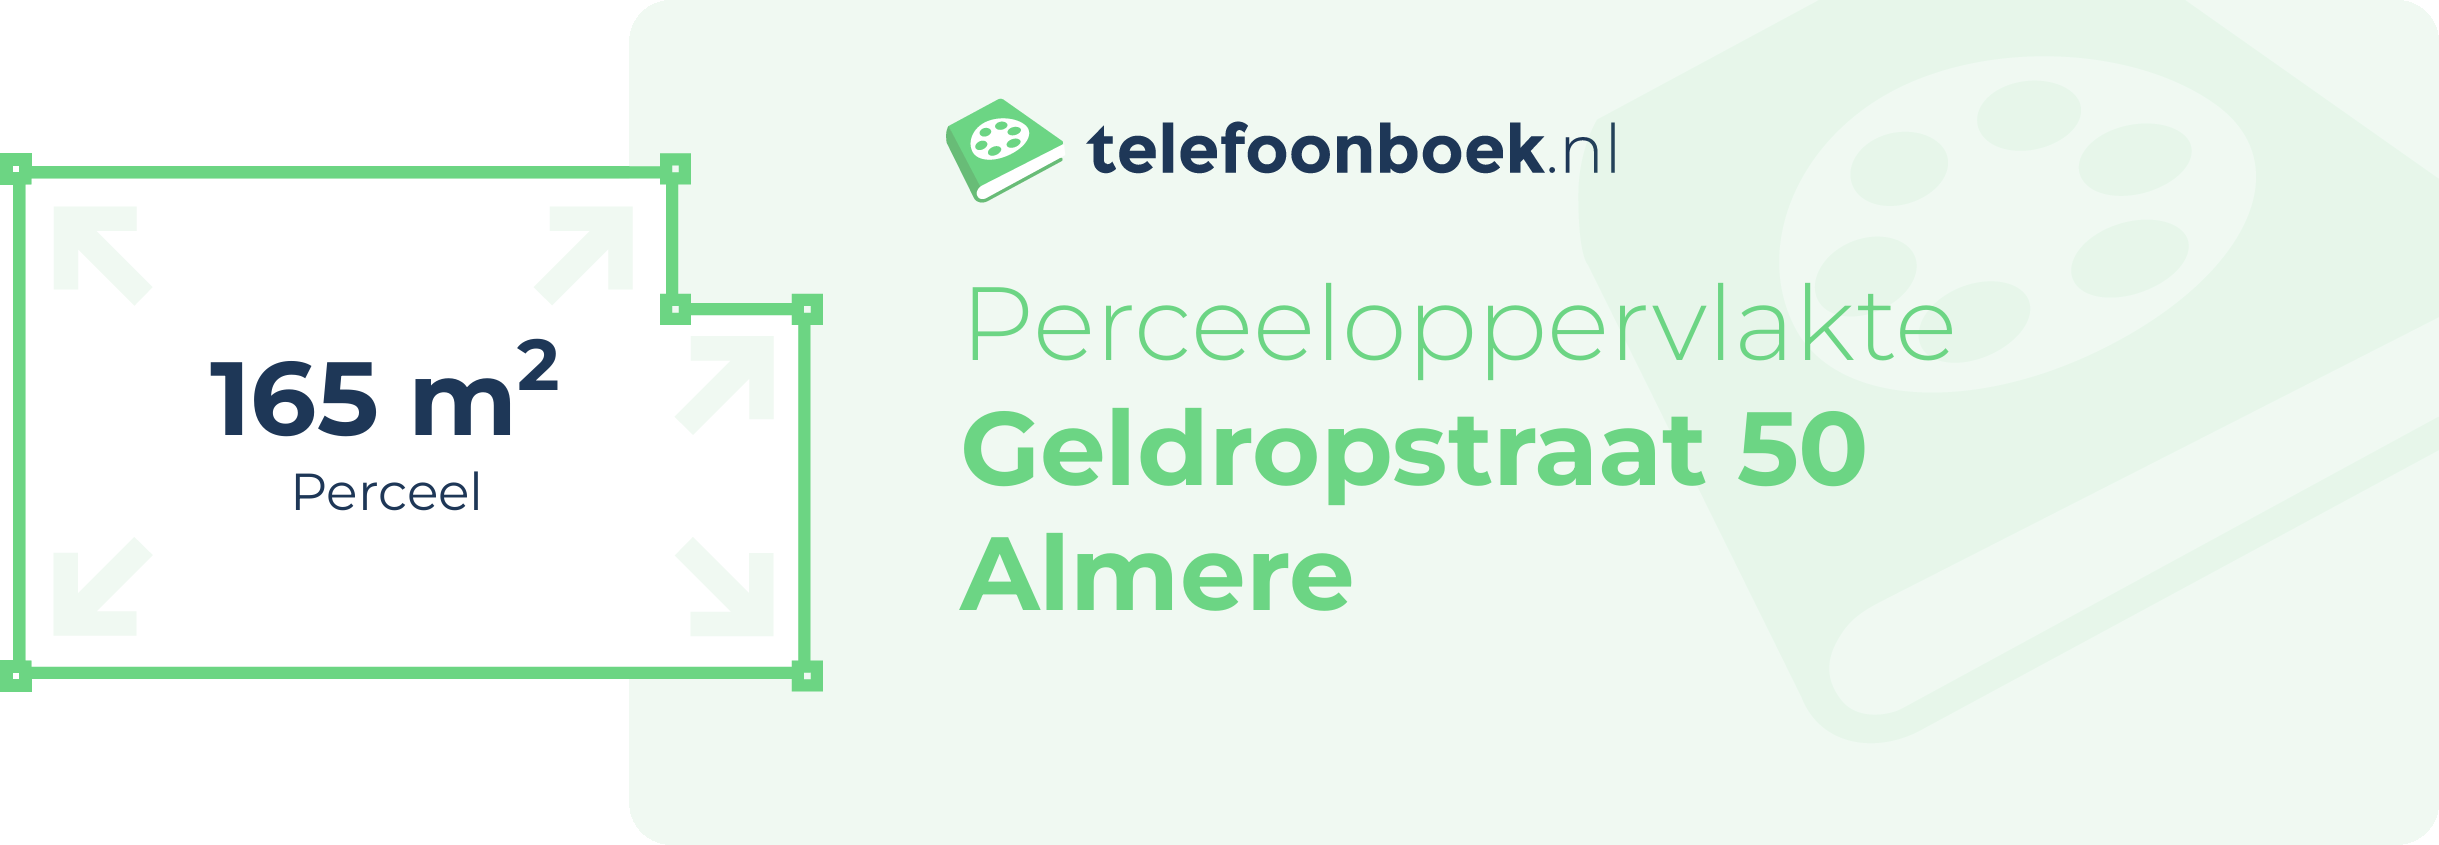 Perceeloppervlakte Geldropstraat 50 Almere